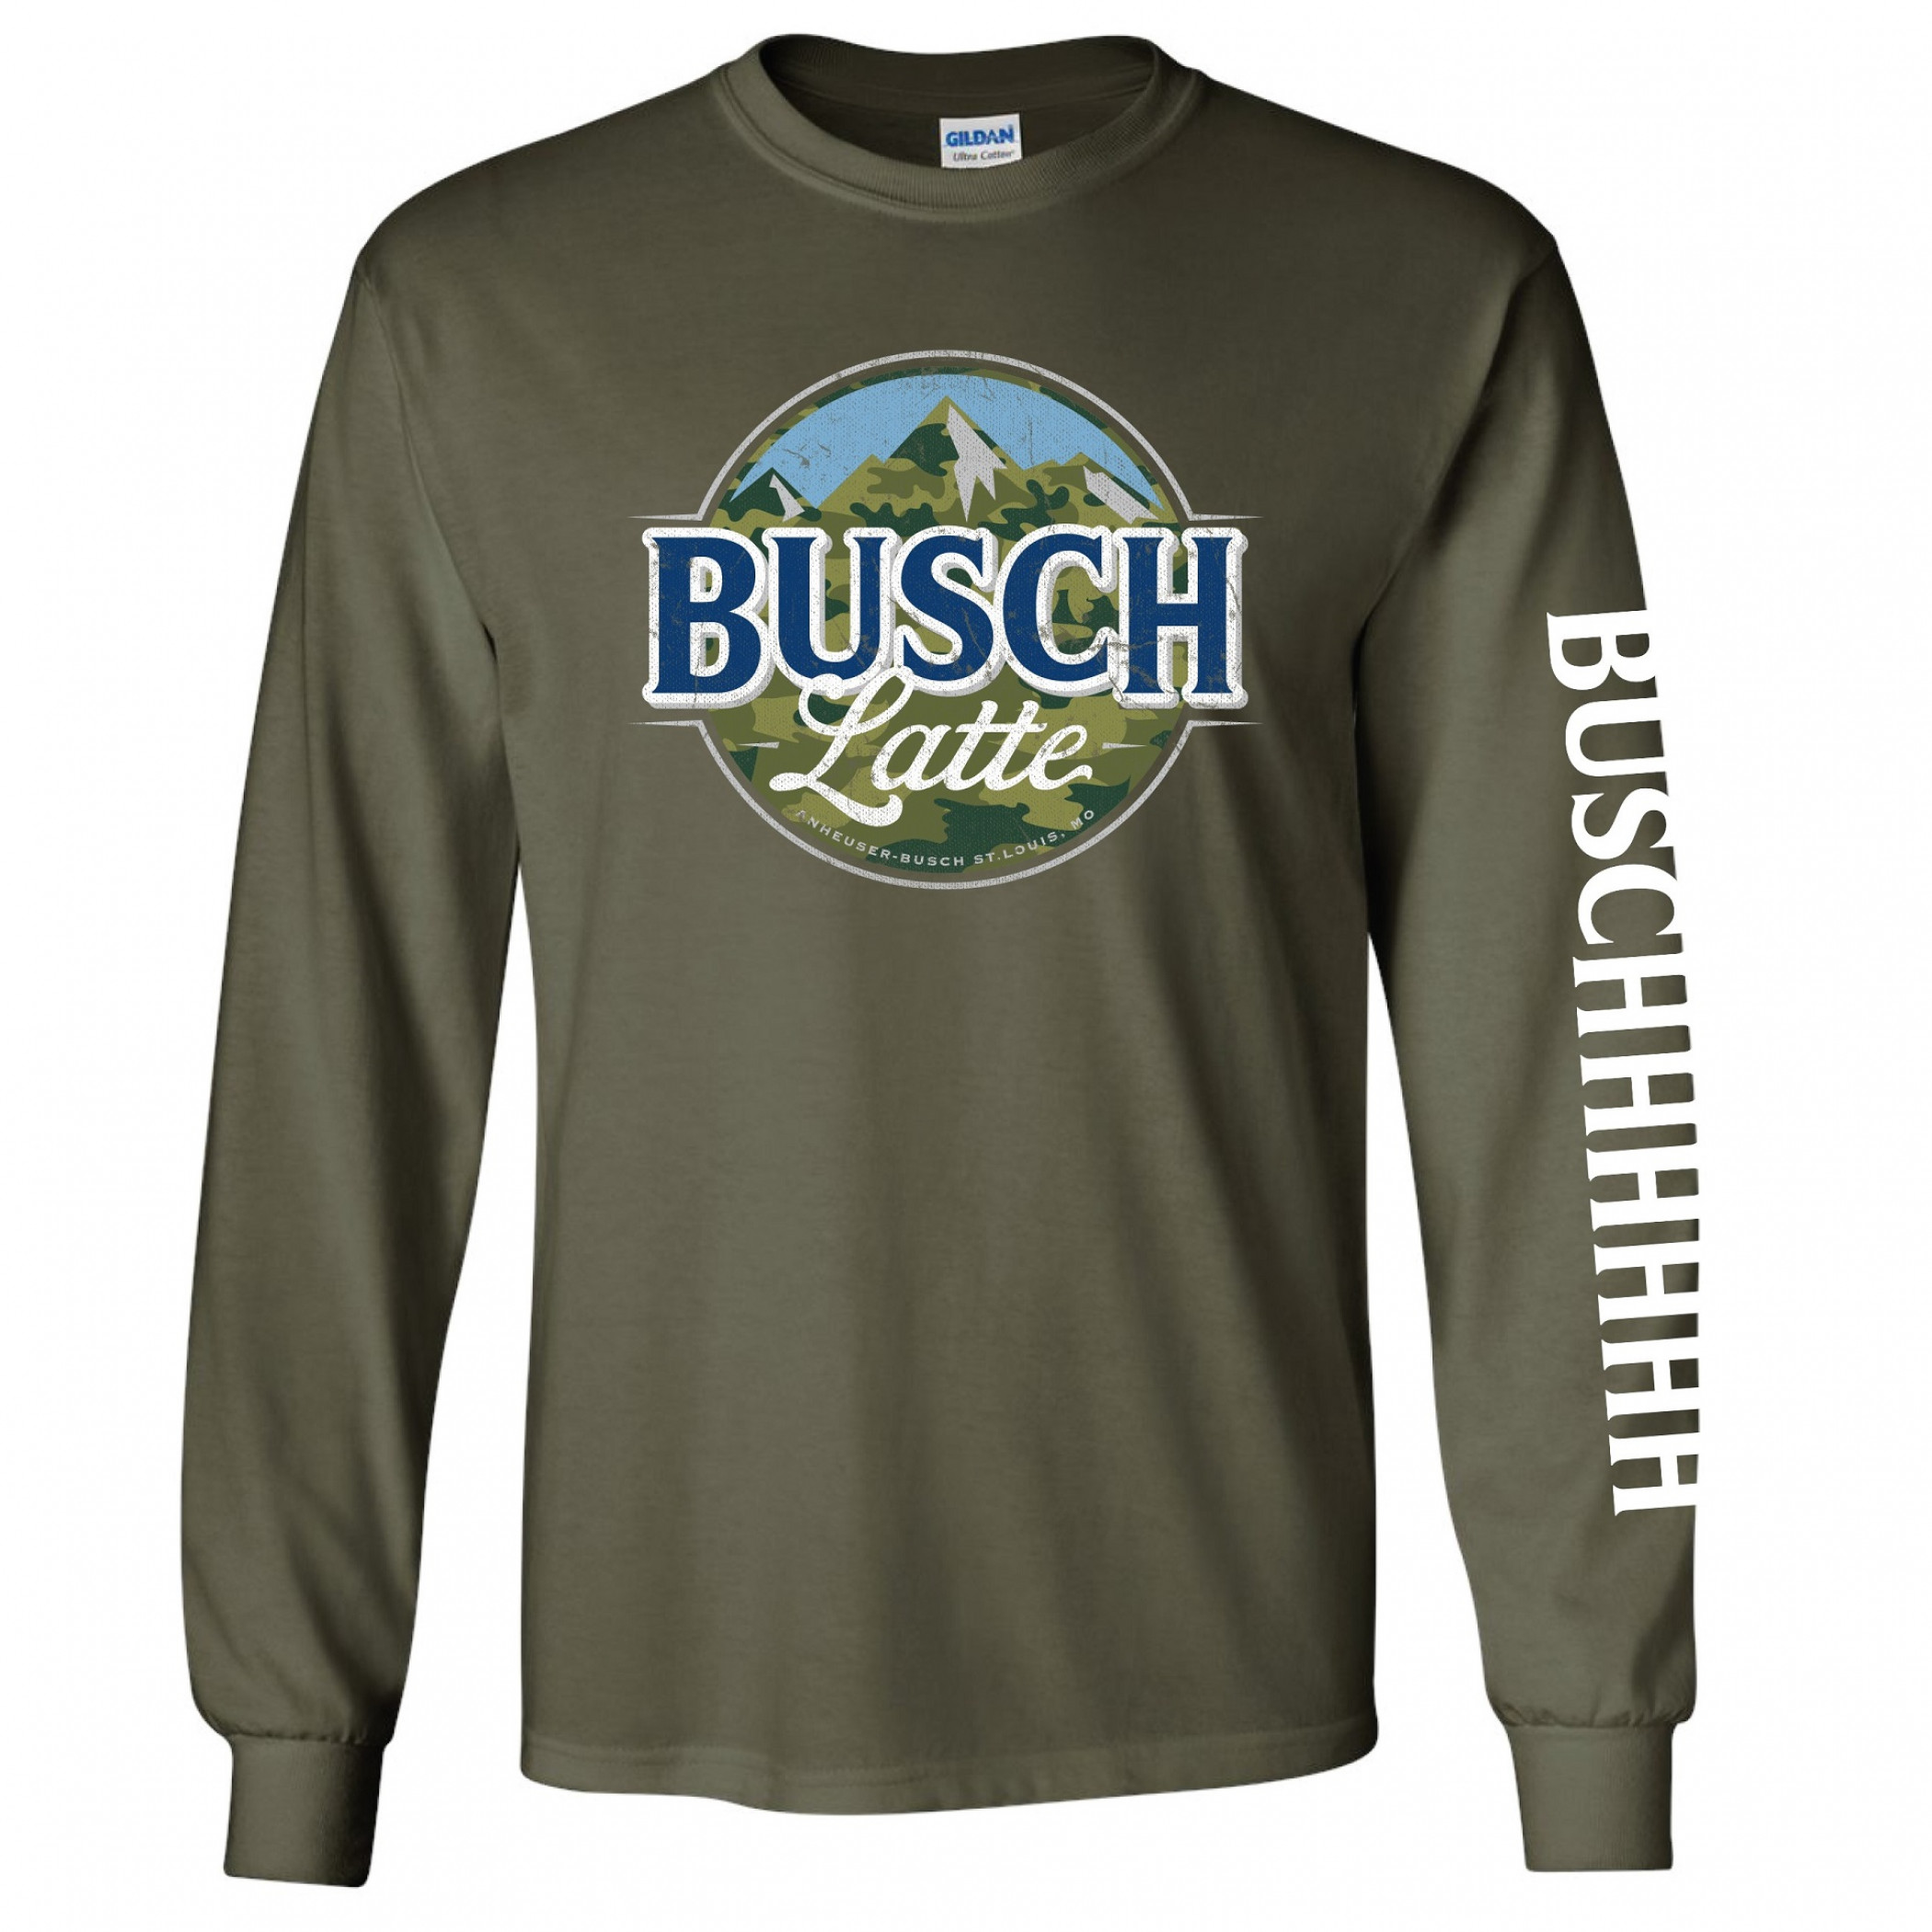 Busch Latte Camouflage Logo Long Sleeve Shirt